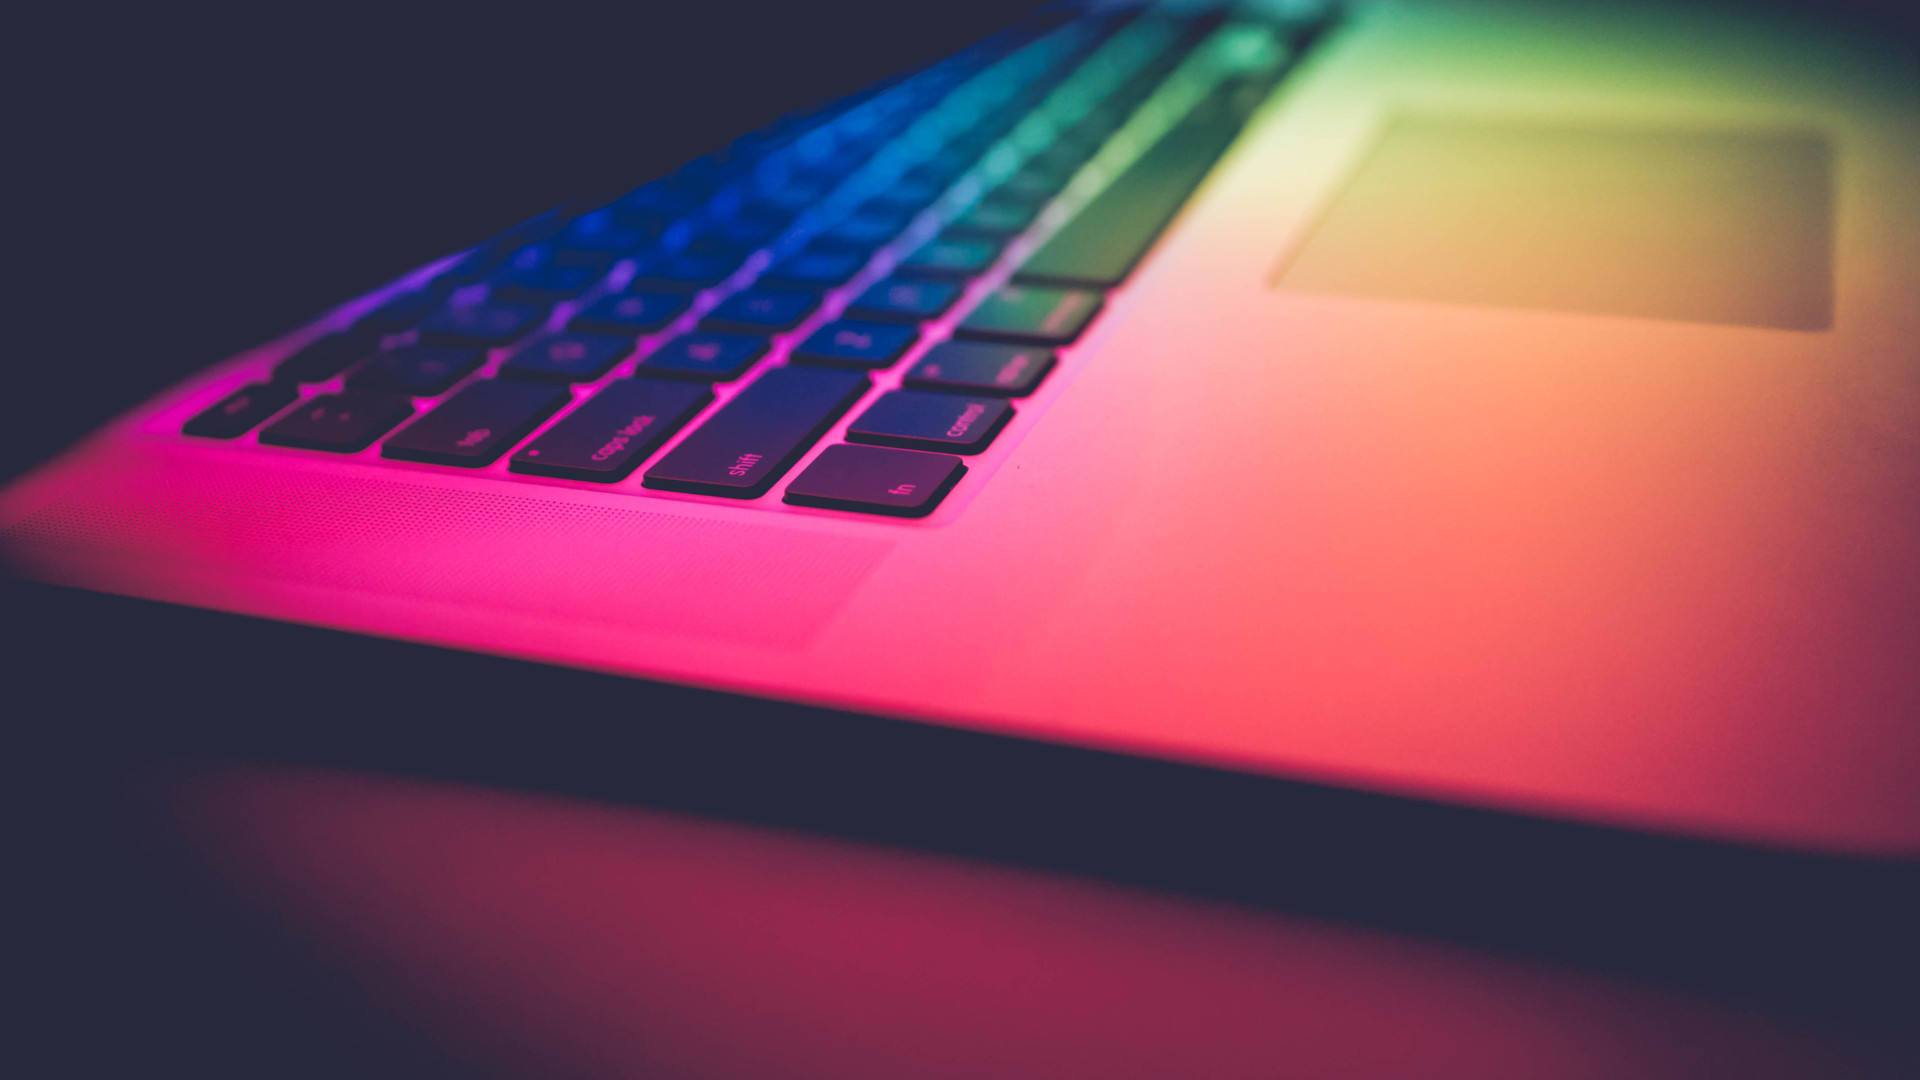 Colourful laptop keyboard background image.